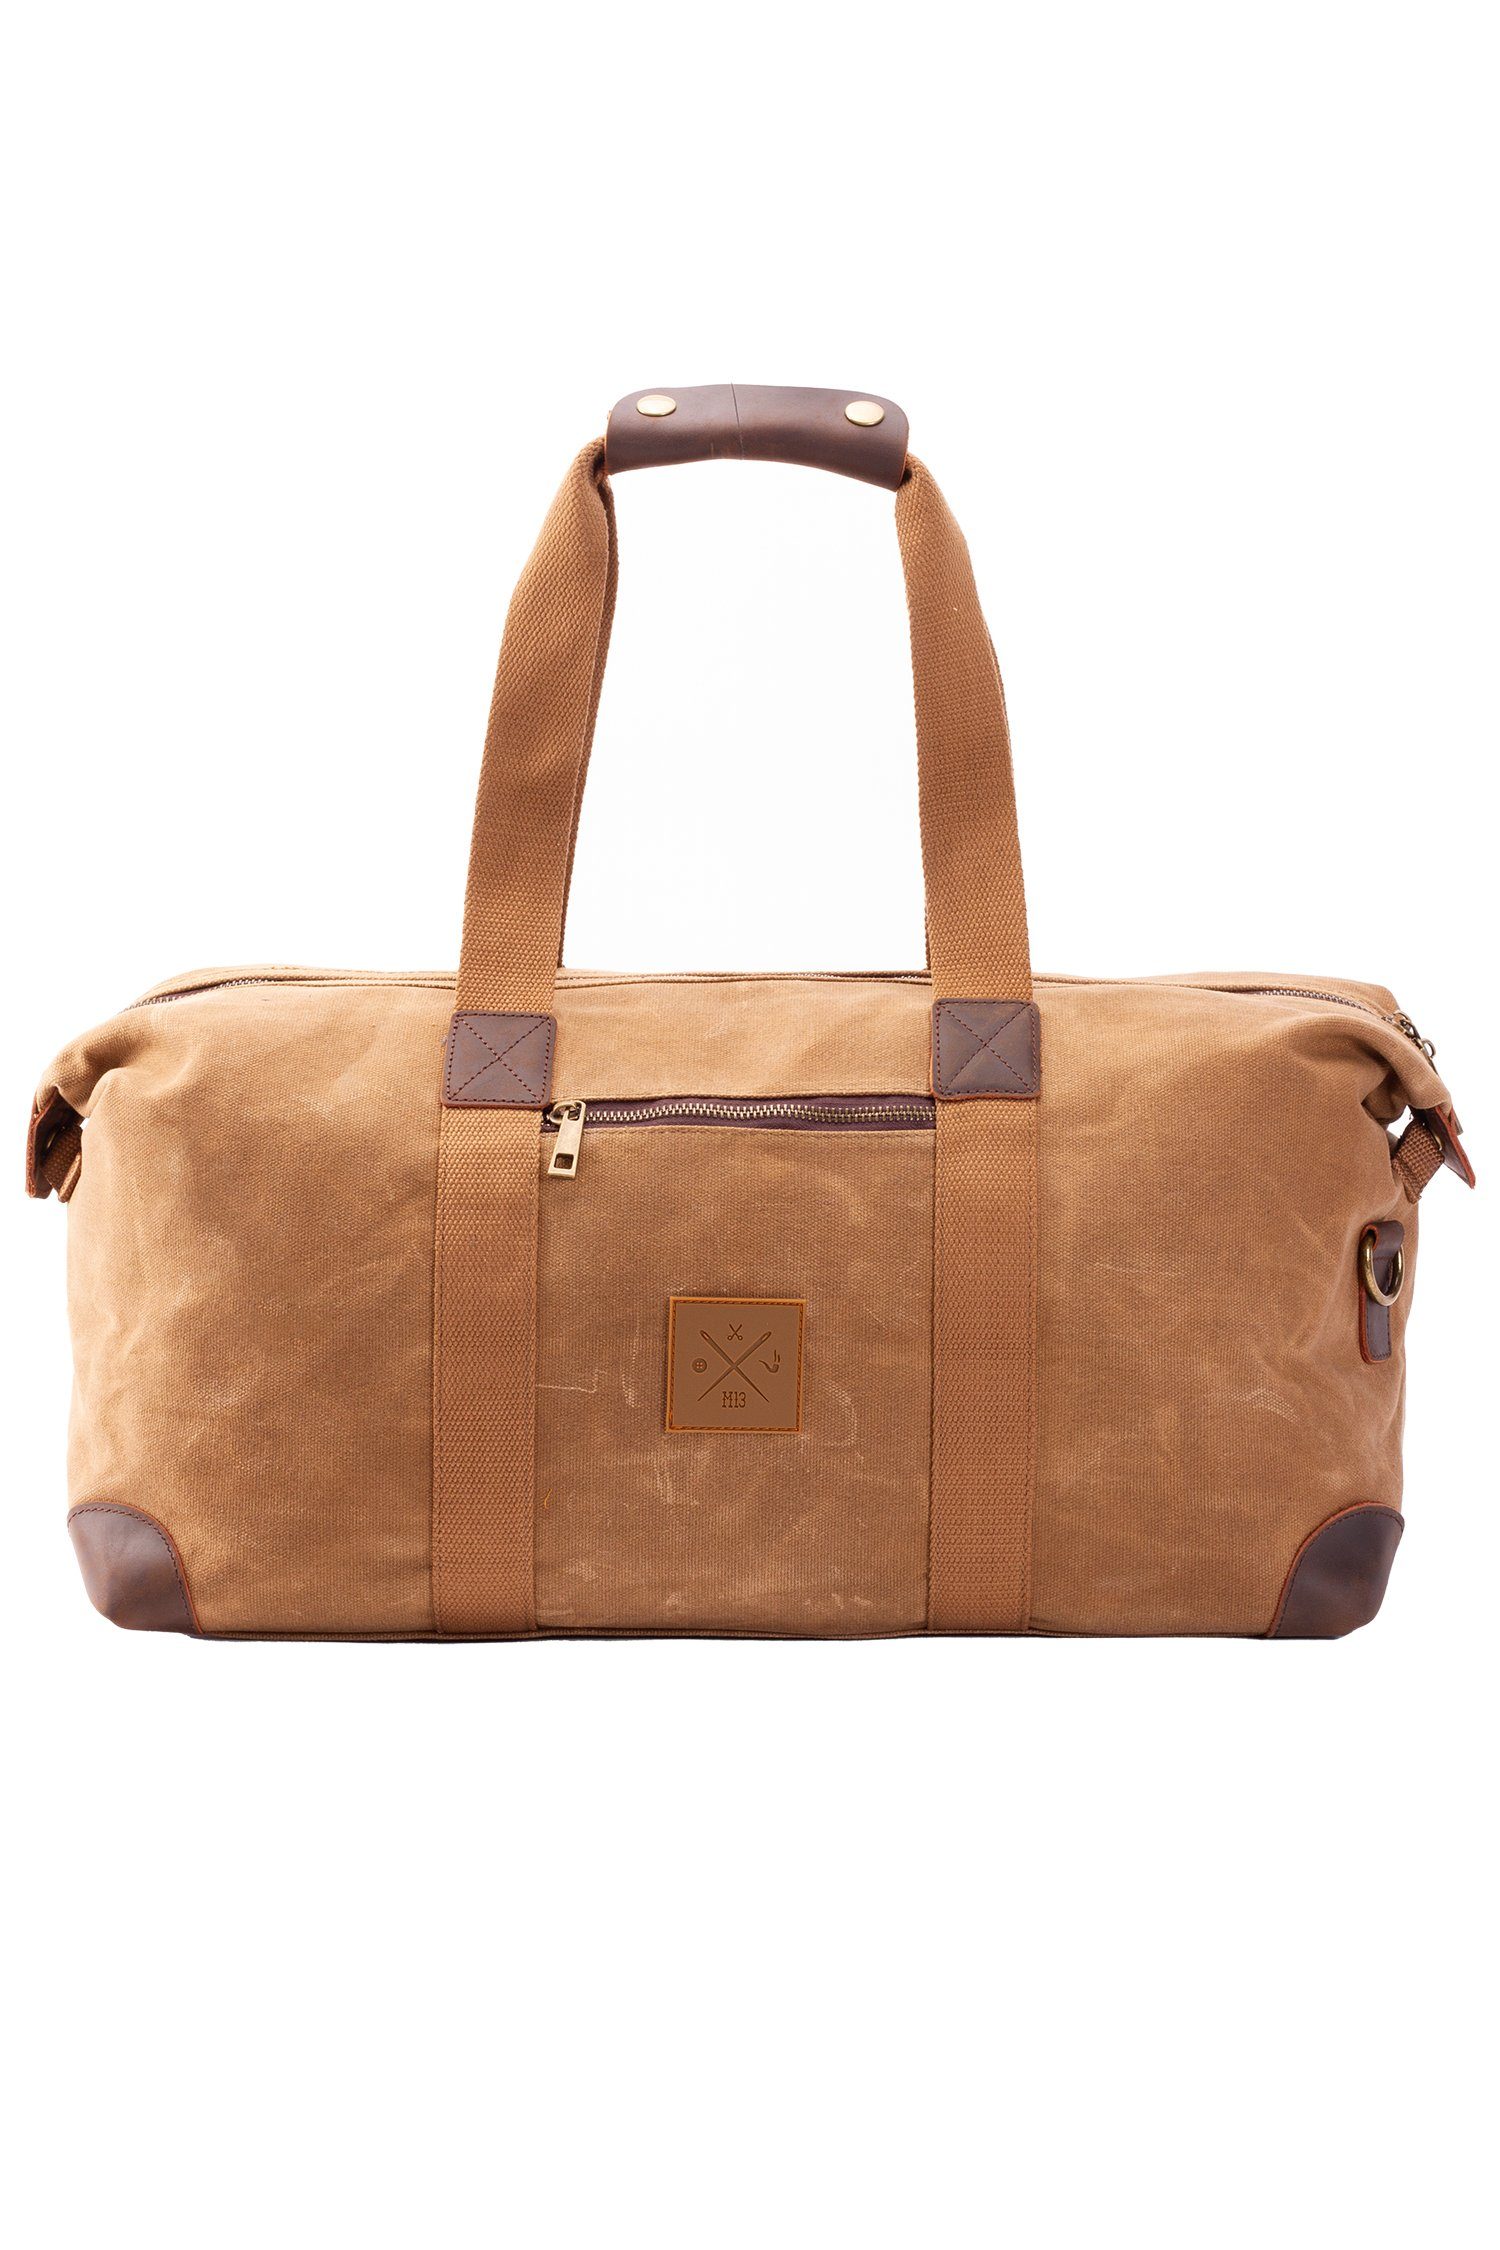 Manufaktur13 Sporttasche Vintage Duffel Bag - Небольшие сумки для поездок , Reisetasche 19L, Schultertasche, Canvas Baumwolle